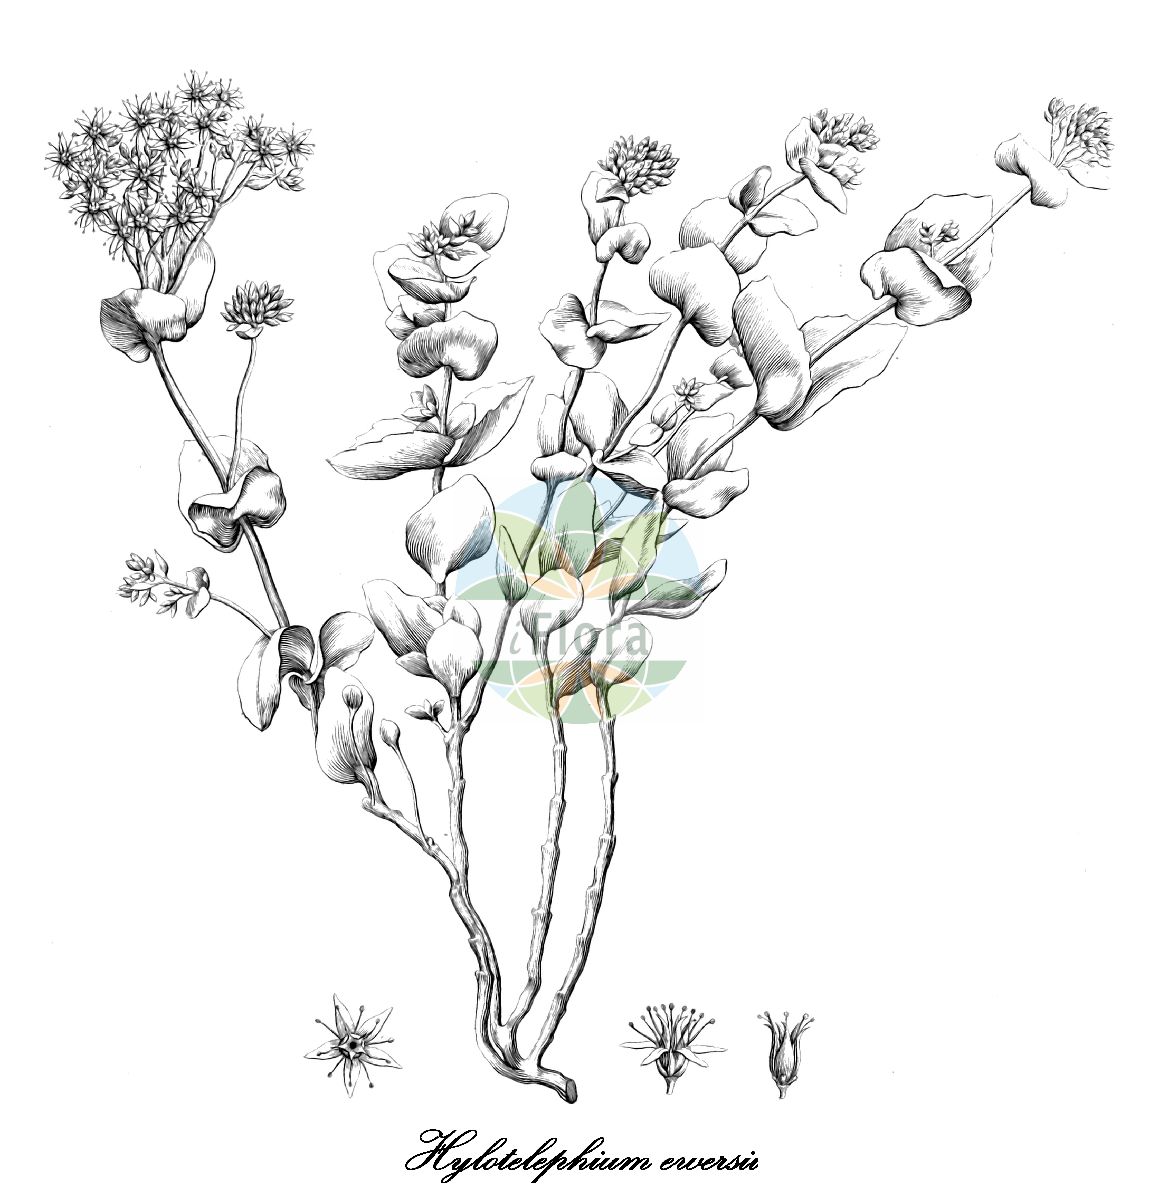 Historische Abbildung von Hylotelephium ewersii (Ewers-Fetthenne). Das Bild zeigt Blatt, Bluete, Frucht und Same. ---- Historical Drawing of Hylotelephium ewersii (Ewers-Fetthenne). The image is showing leaf, flower, fruit and seed.(Hylotelephium ewersii,Ewers-Fetthenne,Sedum ewersii,Hylotelephium,Fetthenne,Orpine,Crassulaceae,Dickblattgewächse,Hilaire,Blatt,Bluete,Frucht,Same,leaf,flower,fruit,seed,von Ledebour (1829-1834))